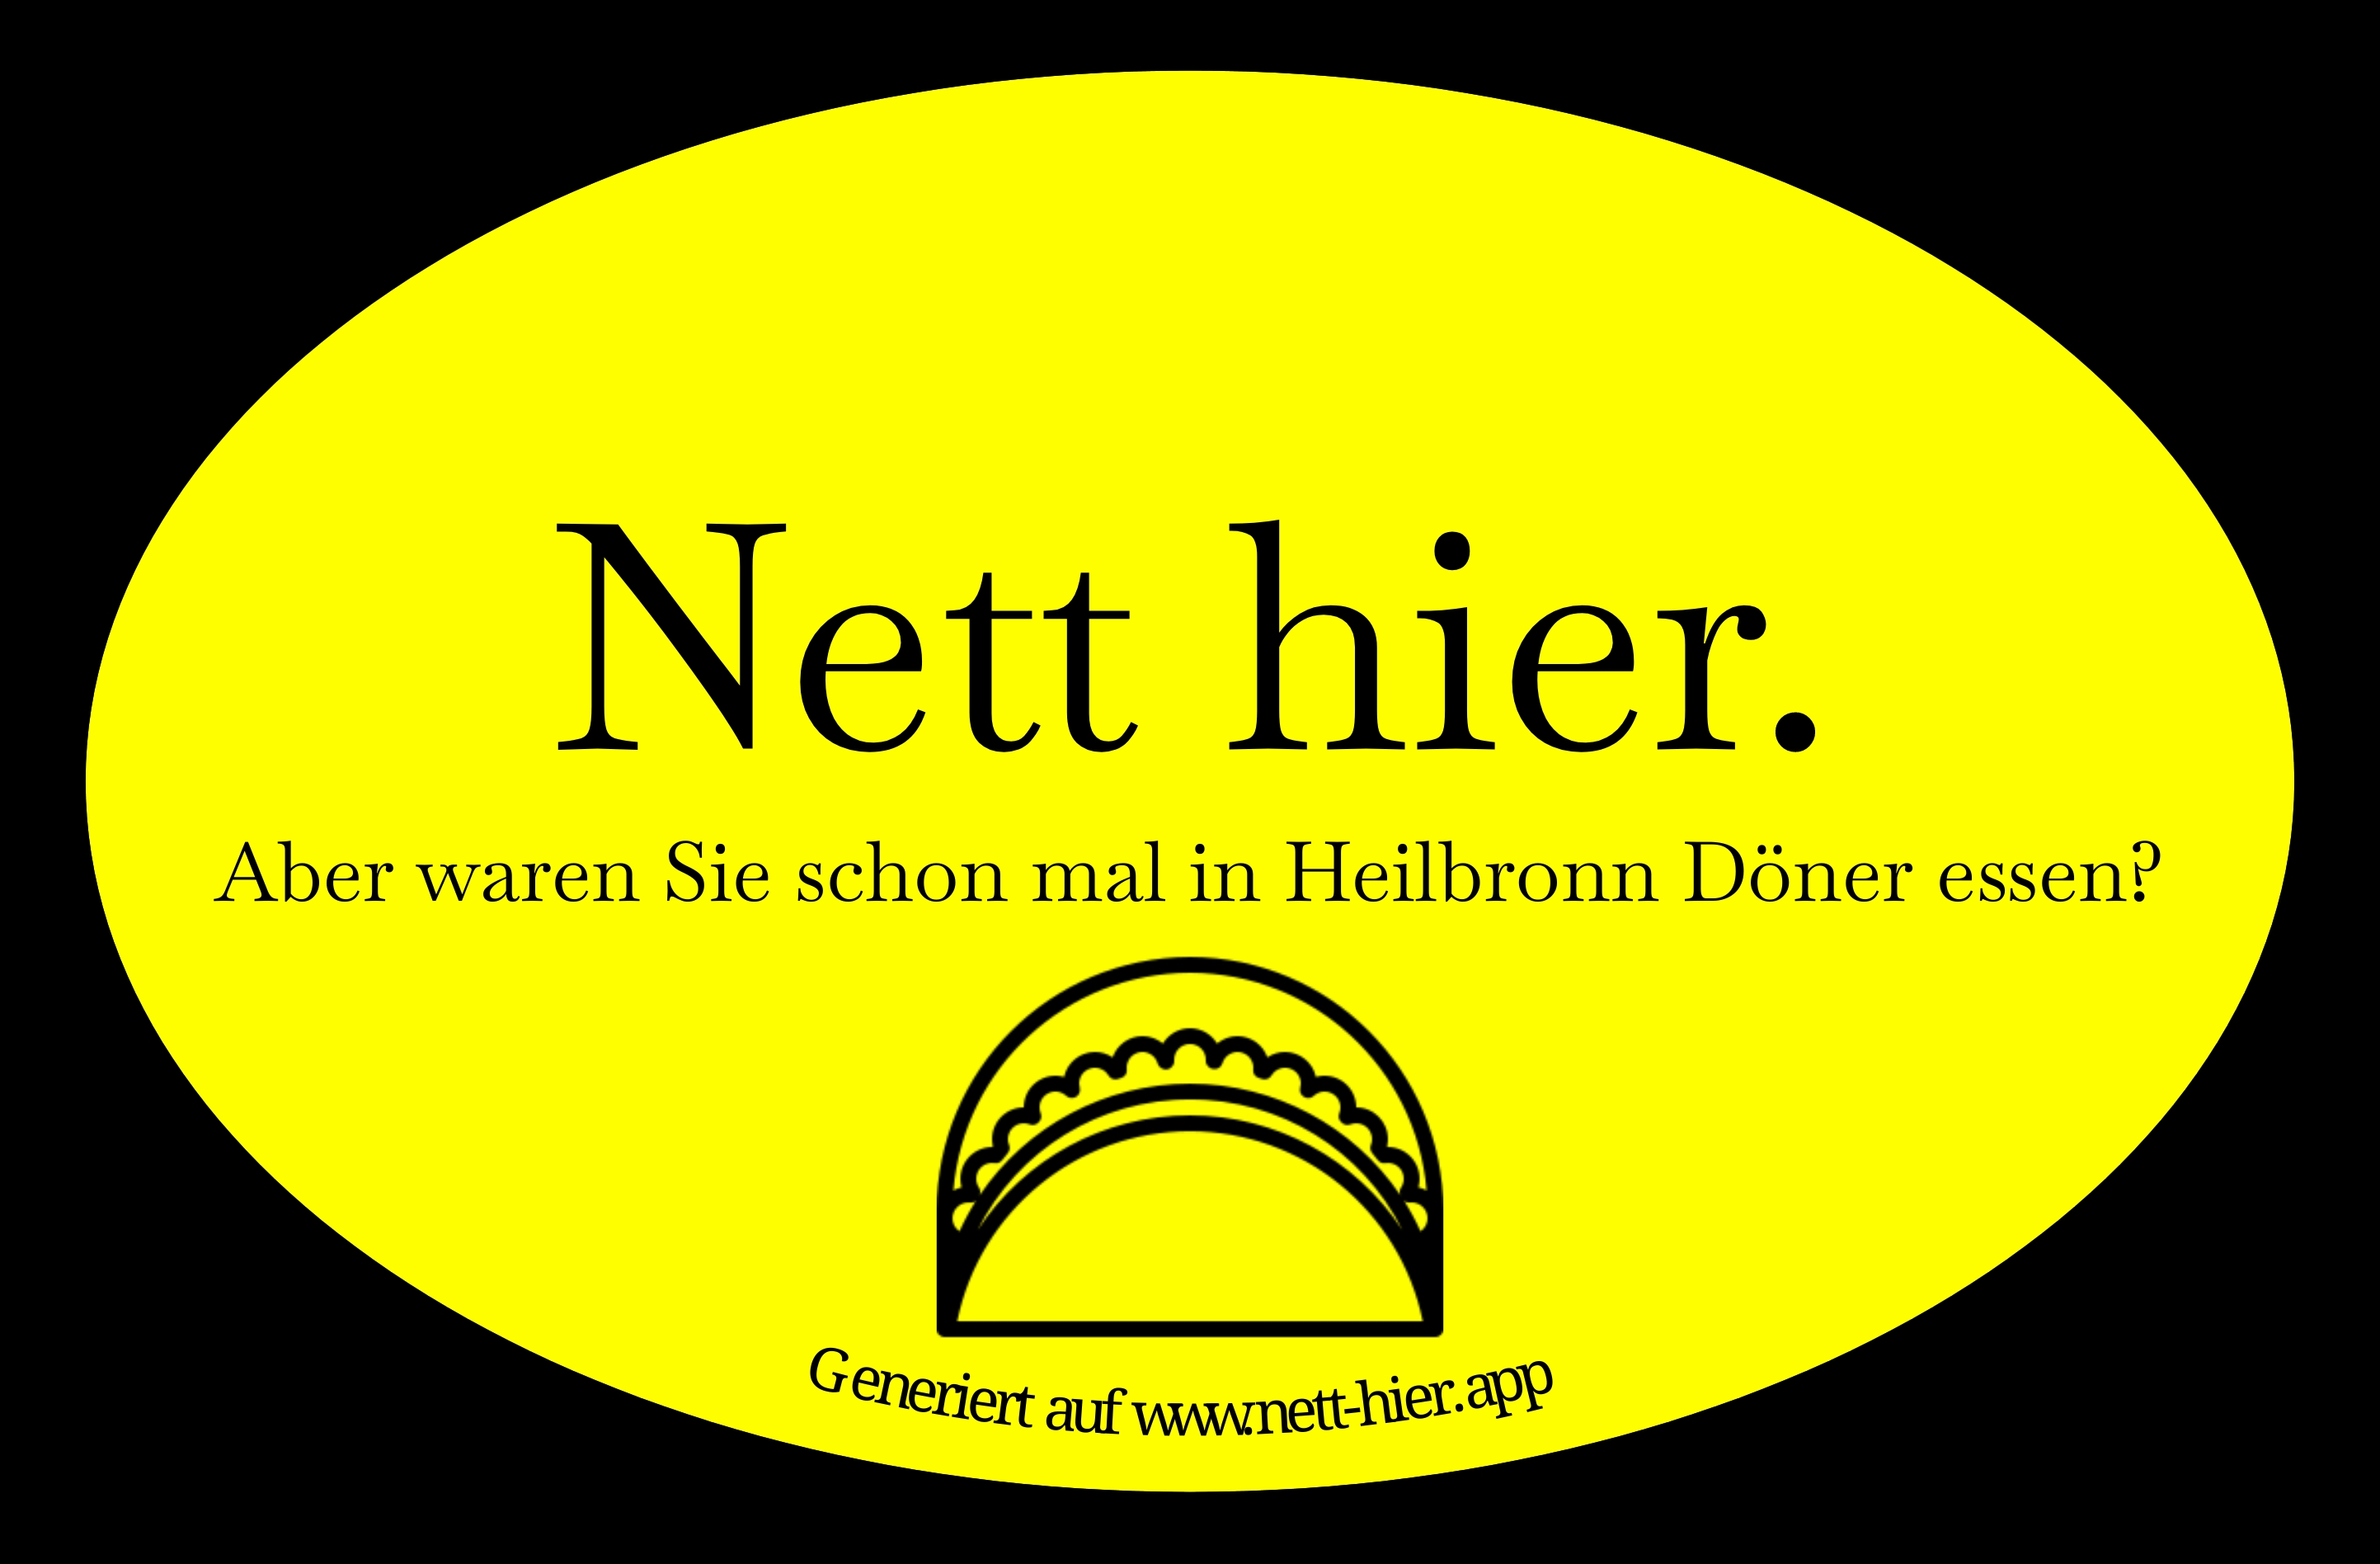 Nett hier, aber waren Sie schon mal in Heilbronn Döner essen?